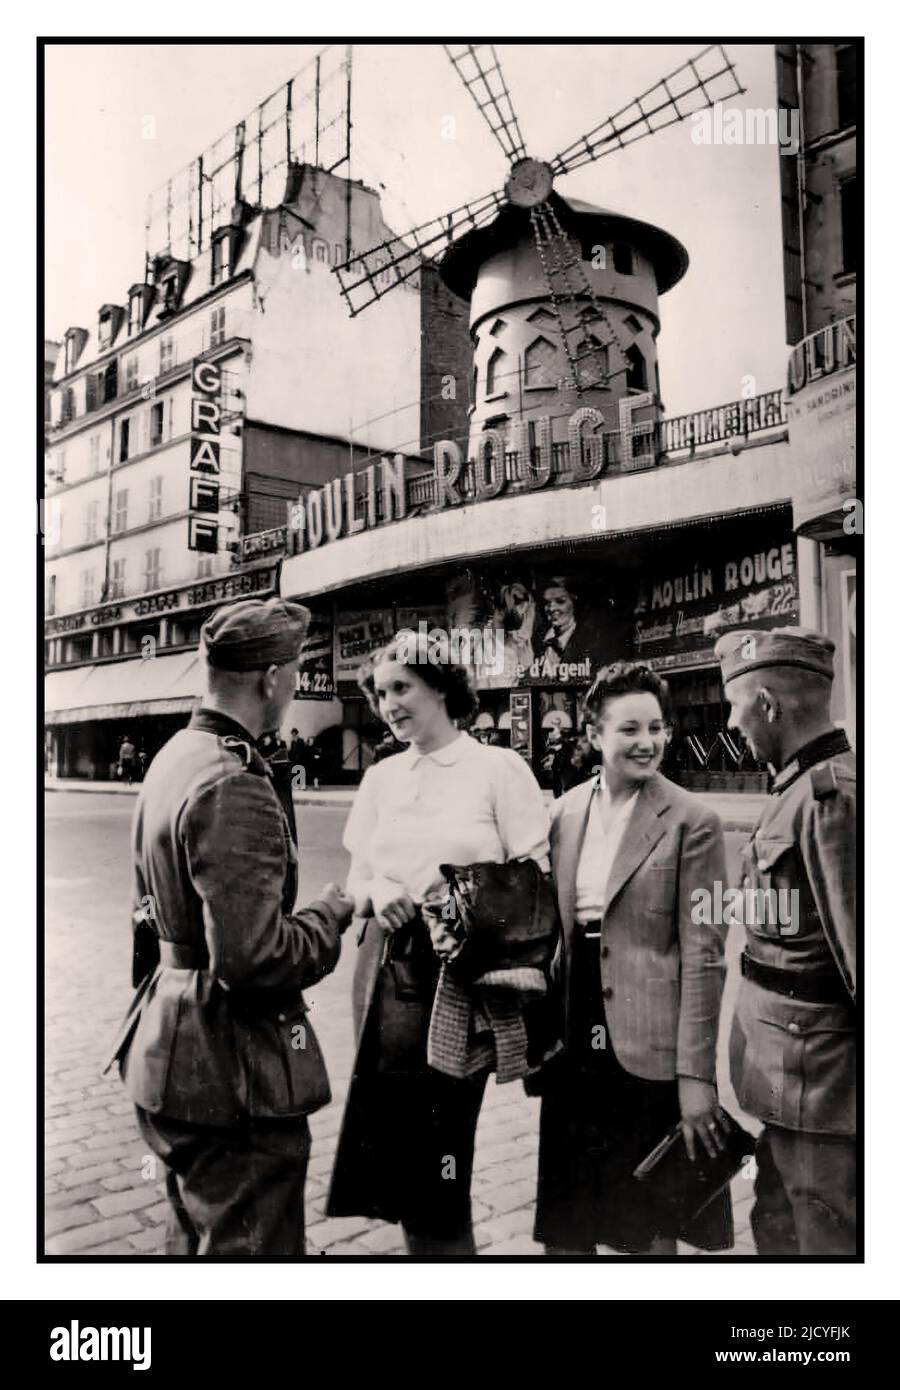 Besetzt Paris Frankreich Nazi WW2 Propagandabild mit zwei deutschen Wehrmachtssoldaten mit zwei Pariser Frauen vor dem Moulin Rouge, während der Nazi-Besetzung von Paris Juni 1940 Paris Frankreich Stockfoto